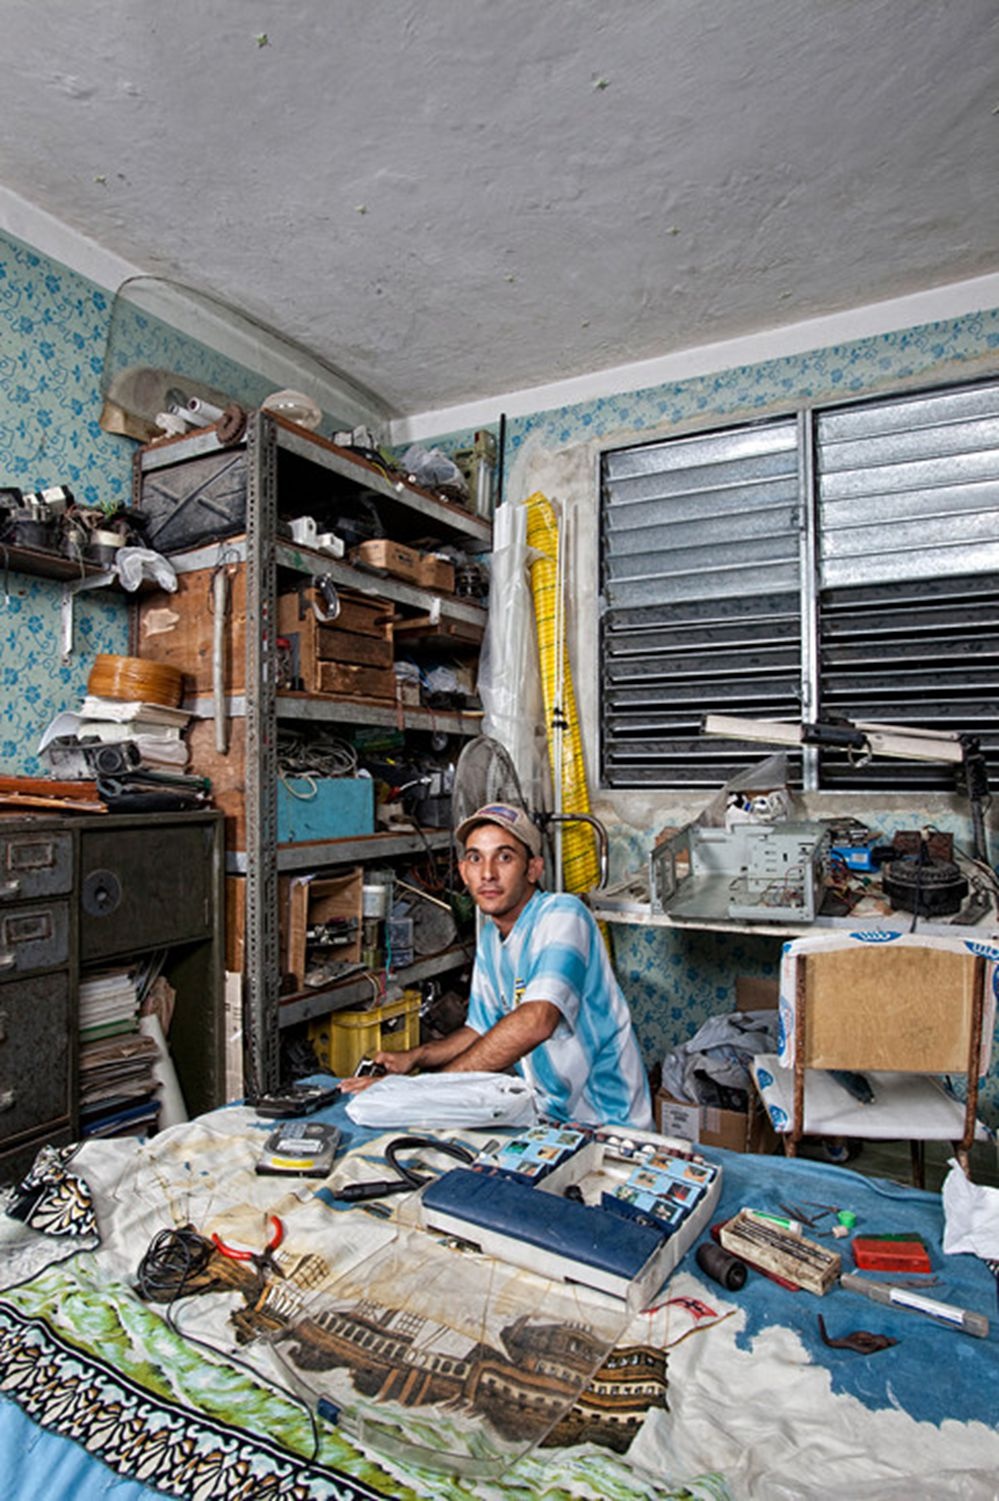 25-ти річний Антоніо Рубіо каже, що йому подобається вивчати електротехніку та електроніку в Гаванському університеті, але там бракує сучасних навчальних матеріалів